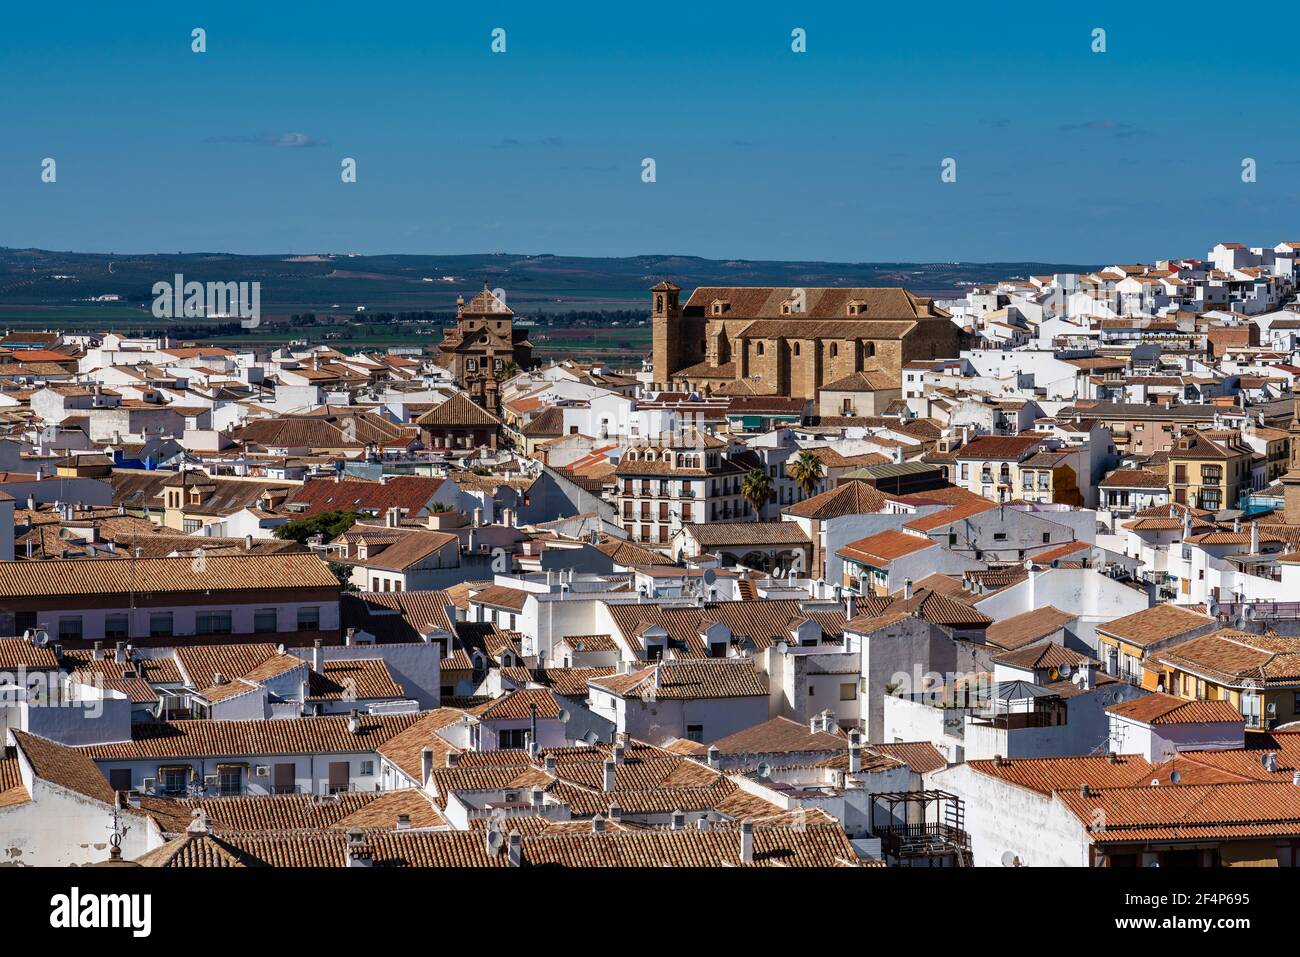 Vista della città di Antequera a Malaga, in Andalusia, Spagna. La città fu fondata dai Romani e il nome antico era origine romana chiamata Anticuaria. Foto Stock